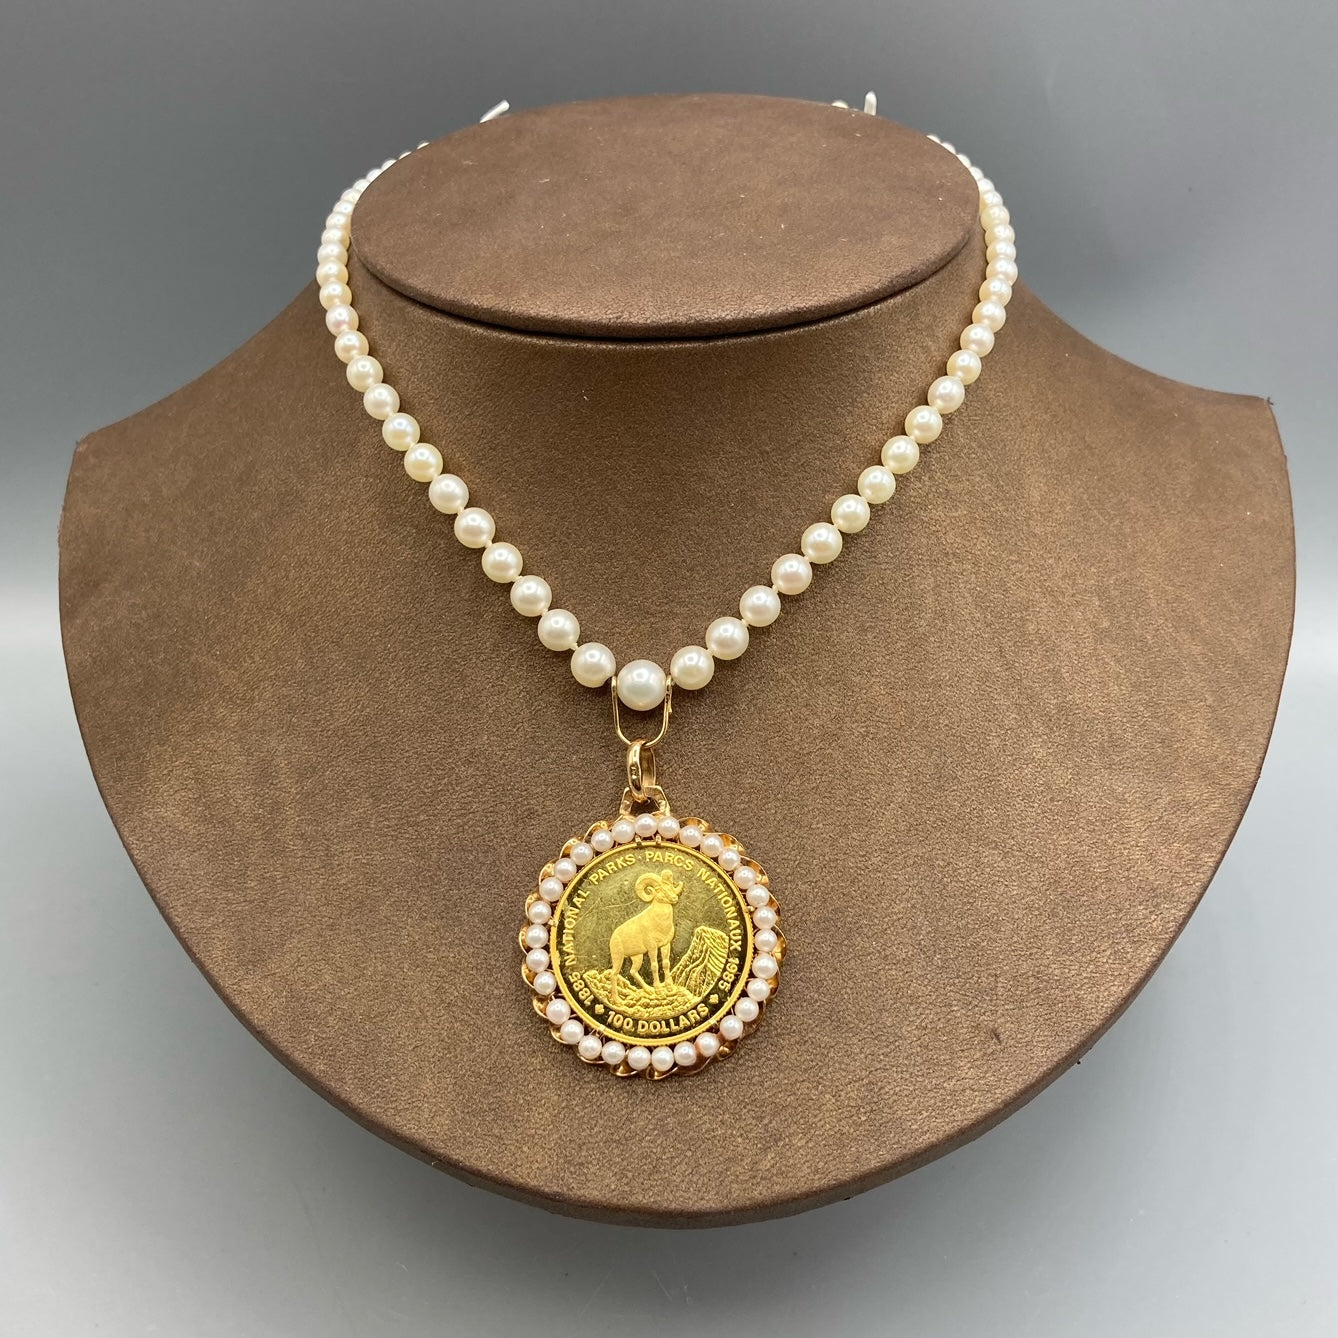 1985 Canada 100 Dollars Gold Coin Parcs nationaux sur collier de perles graduées